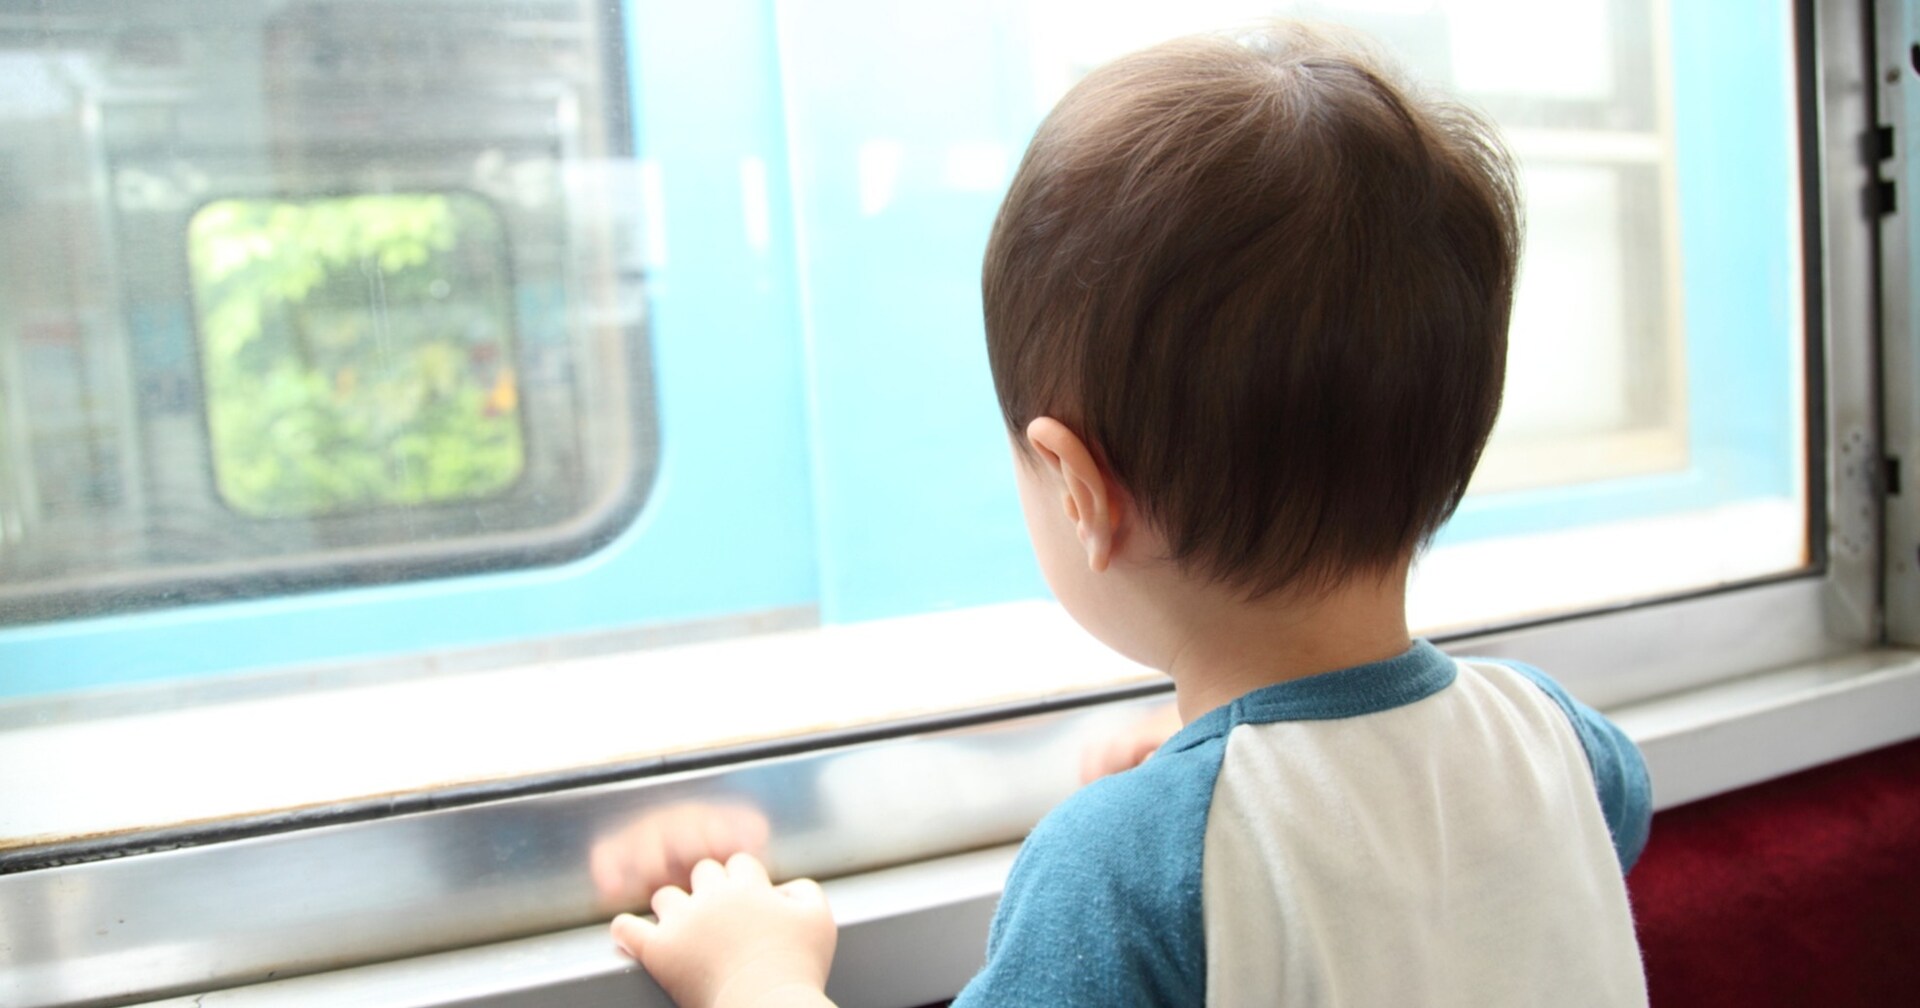 「外を見るなら靴を脱いで！」電車内で子どもを注意すると、向かいの女性がその様子を見つめており…？